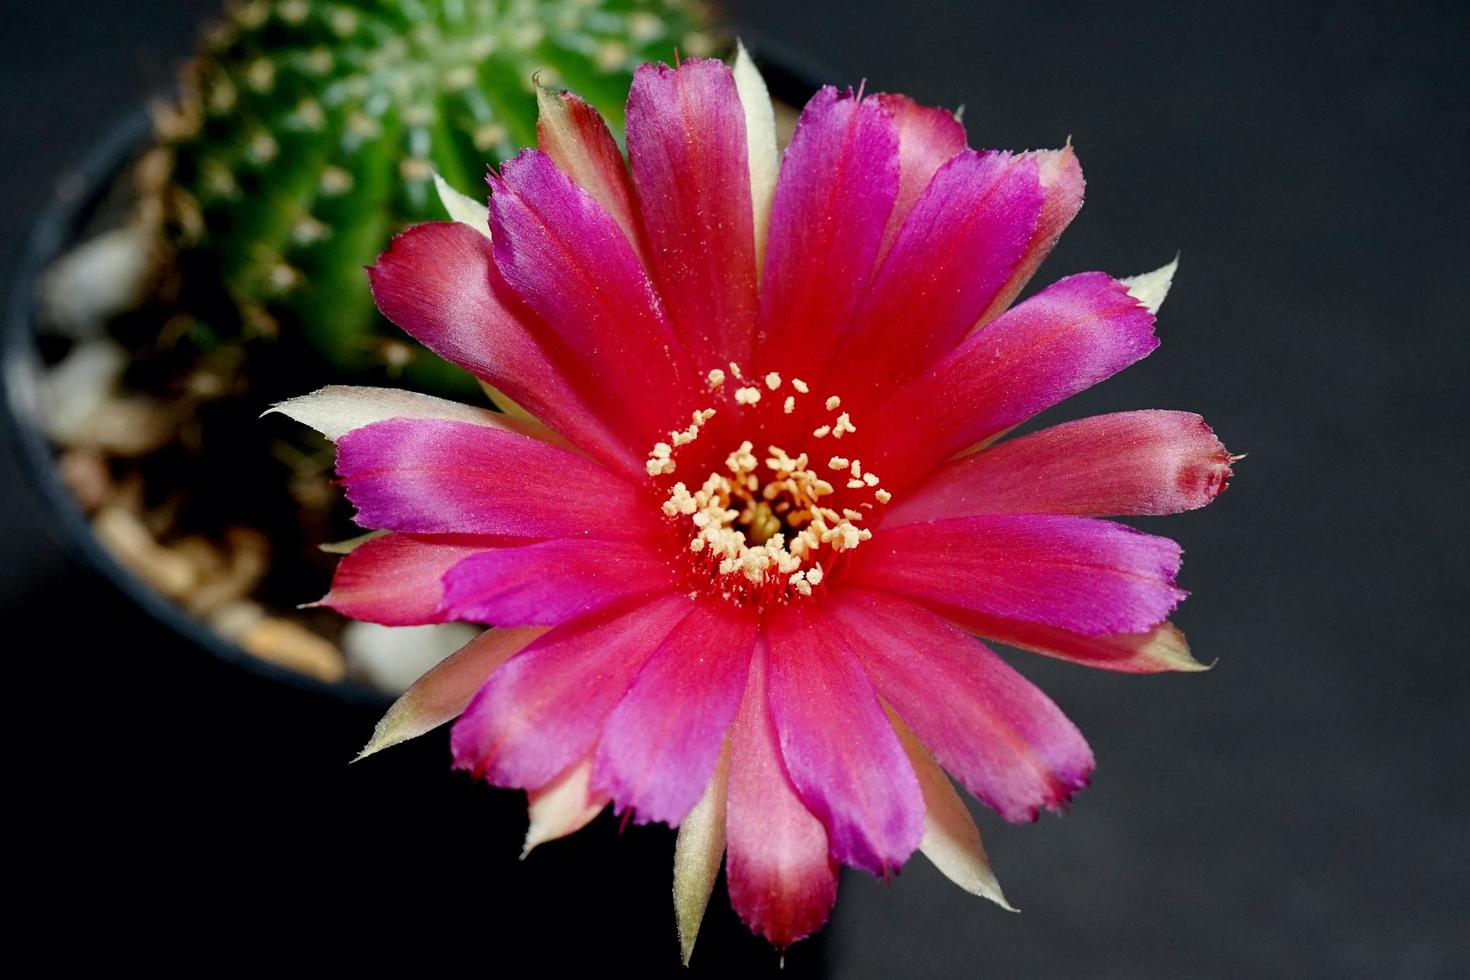 fleur hybride de lobivia rose et rouge, il plante le type d'étamines de cactus de cactus la couleur jaune est l'echinopsis trouvé dans les tropiques, gros plan photo